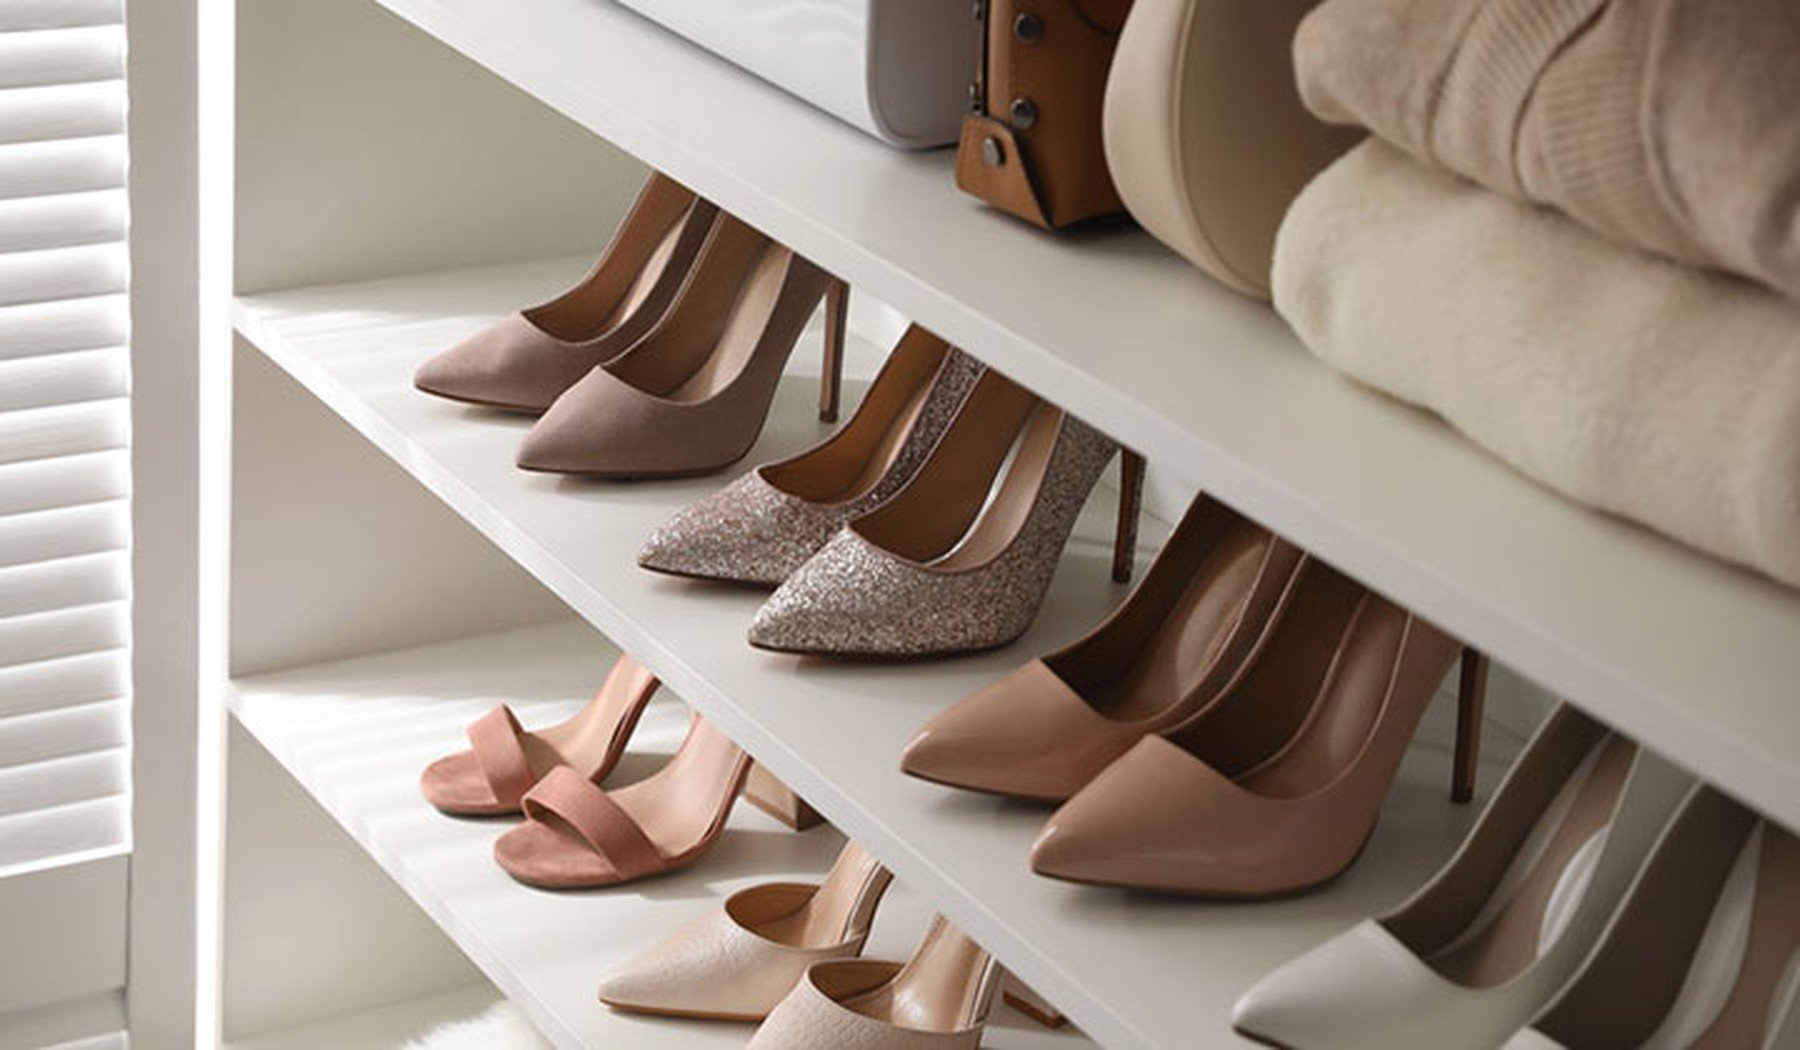 Colección de zapatos de vestir en un armario